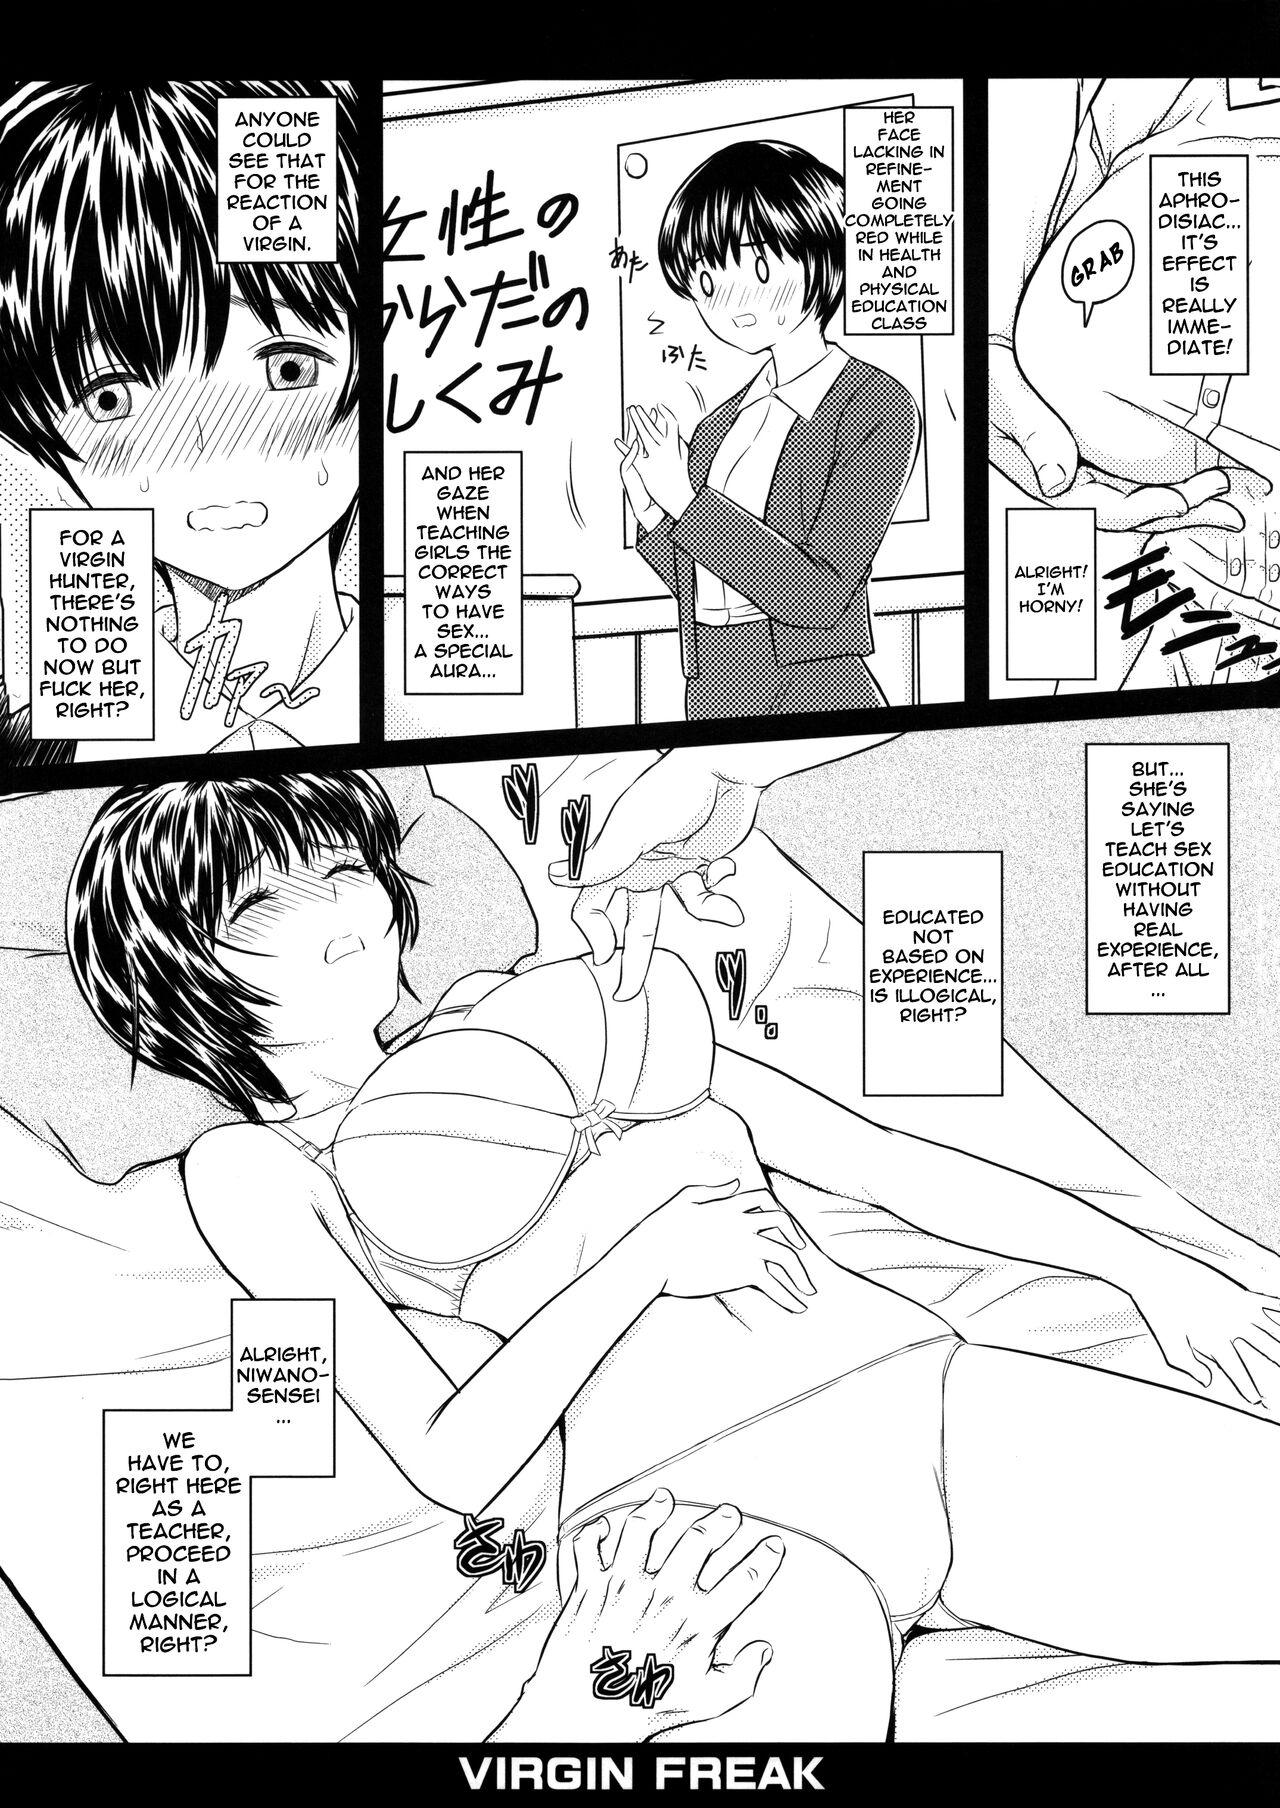 Best Blow Job Ever Virgin Freak - Is Tsukiatte yo satsuki-chan Step Mom - Page 5